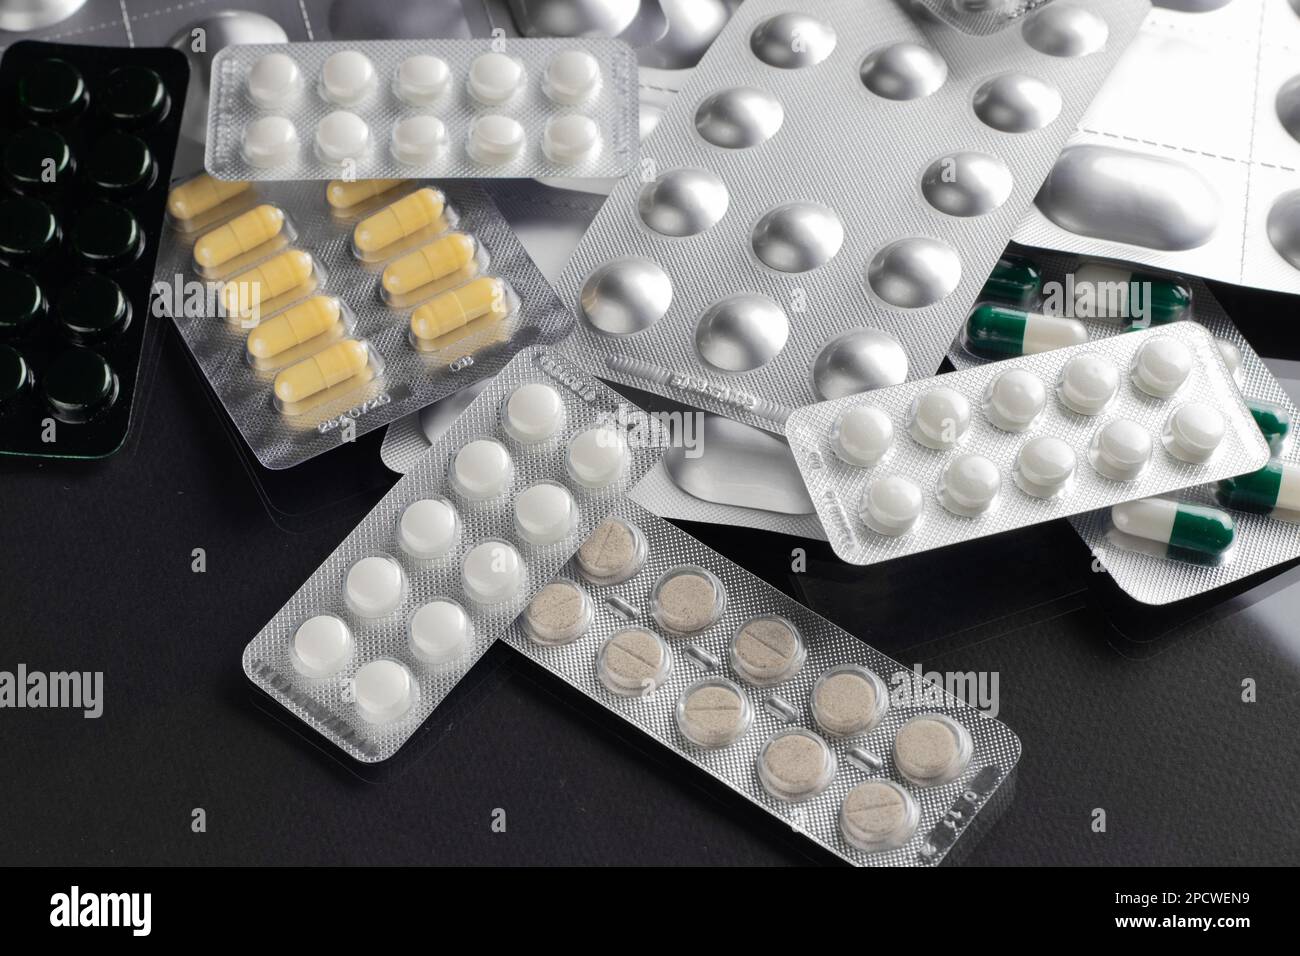 Les médicaments et les comprimés sous blister sont dispersés sur la table Banque D'Images